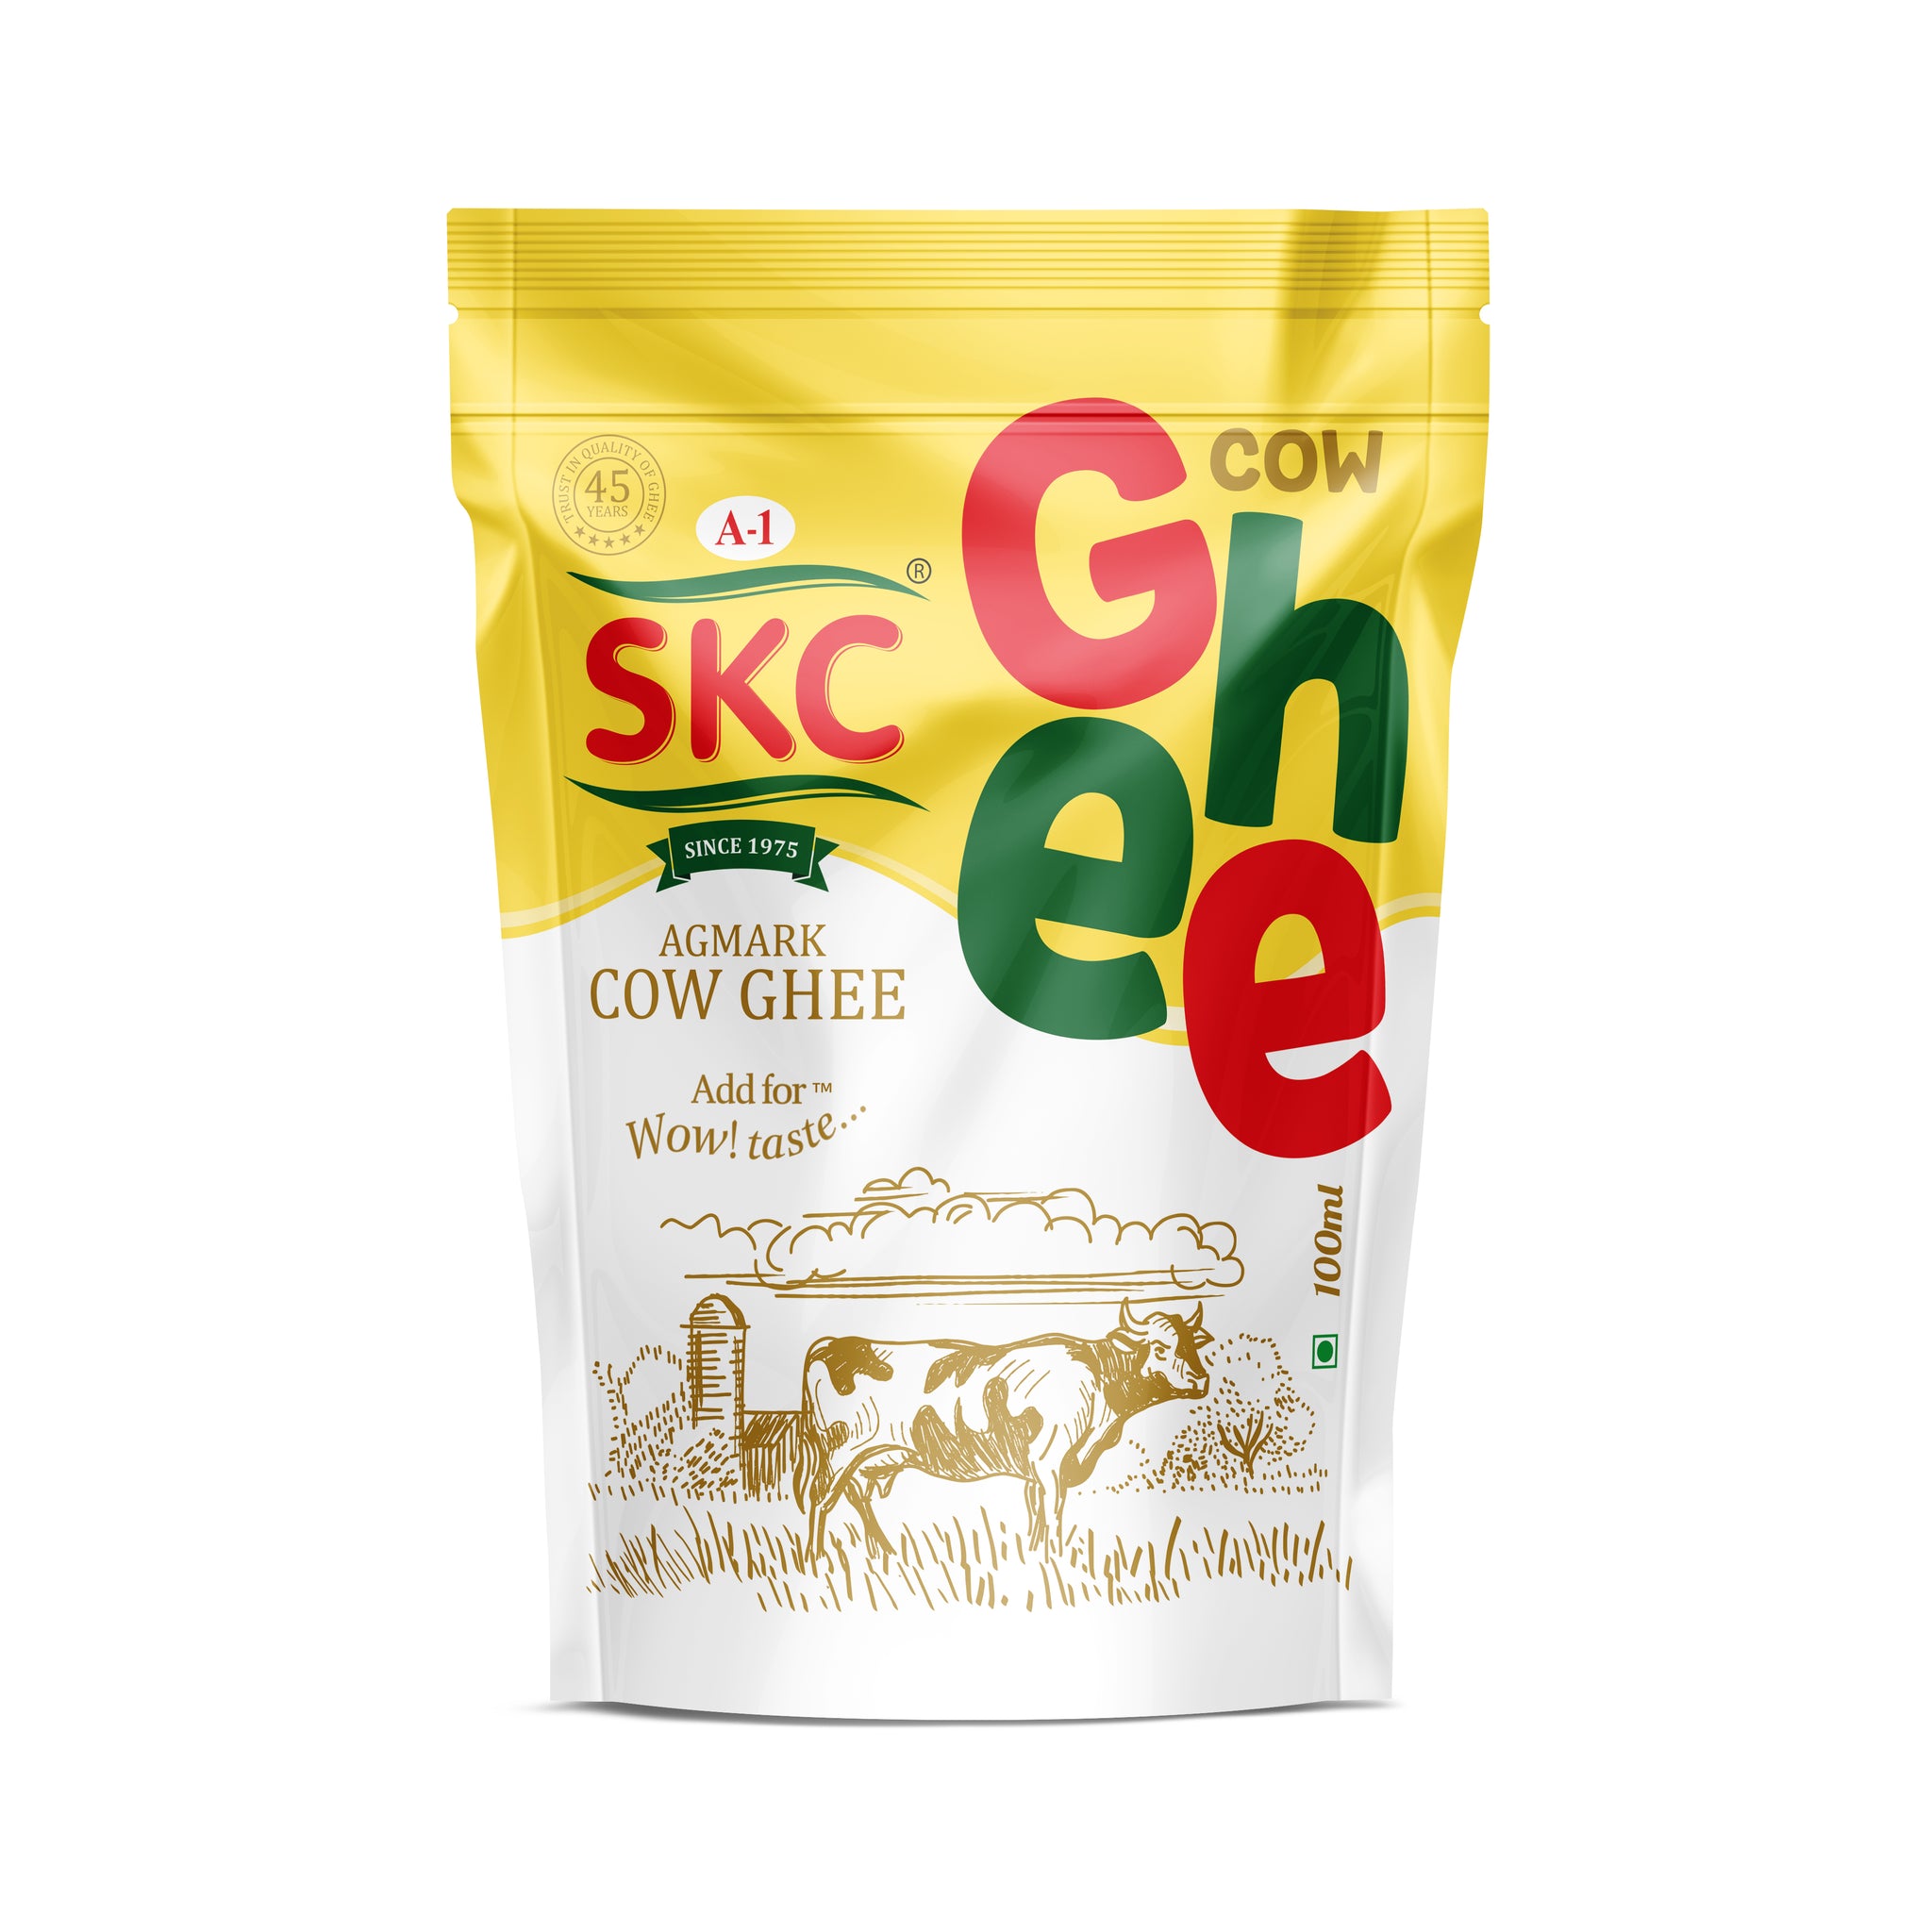 A1 SKC Pure Cow Ghee 50 ml Pouch